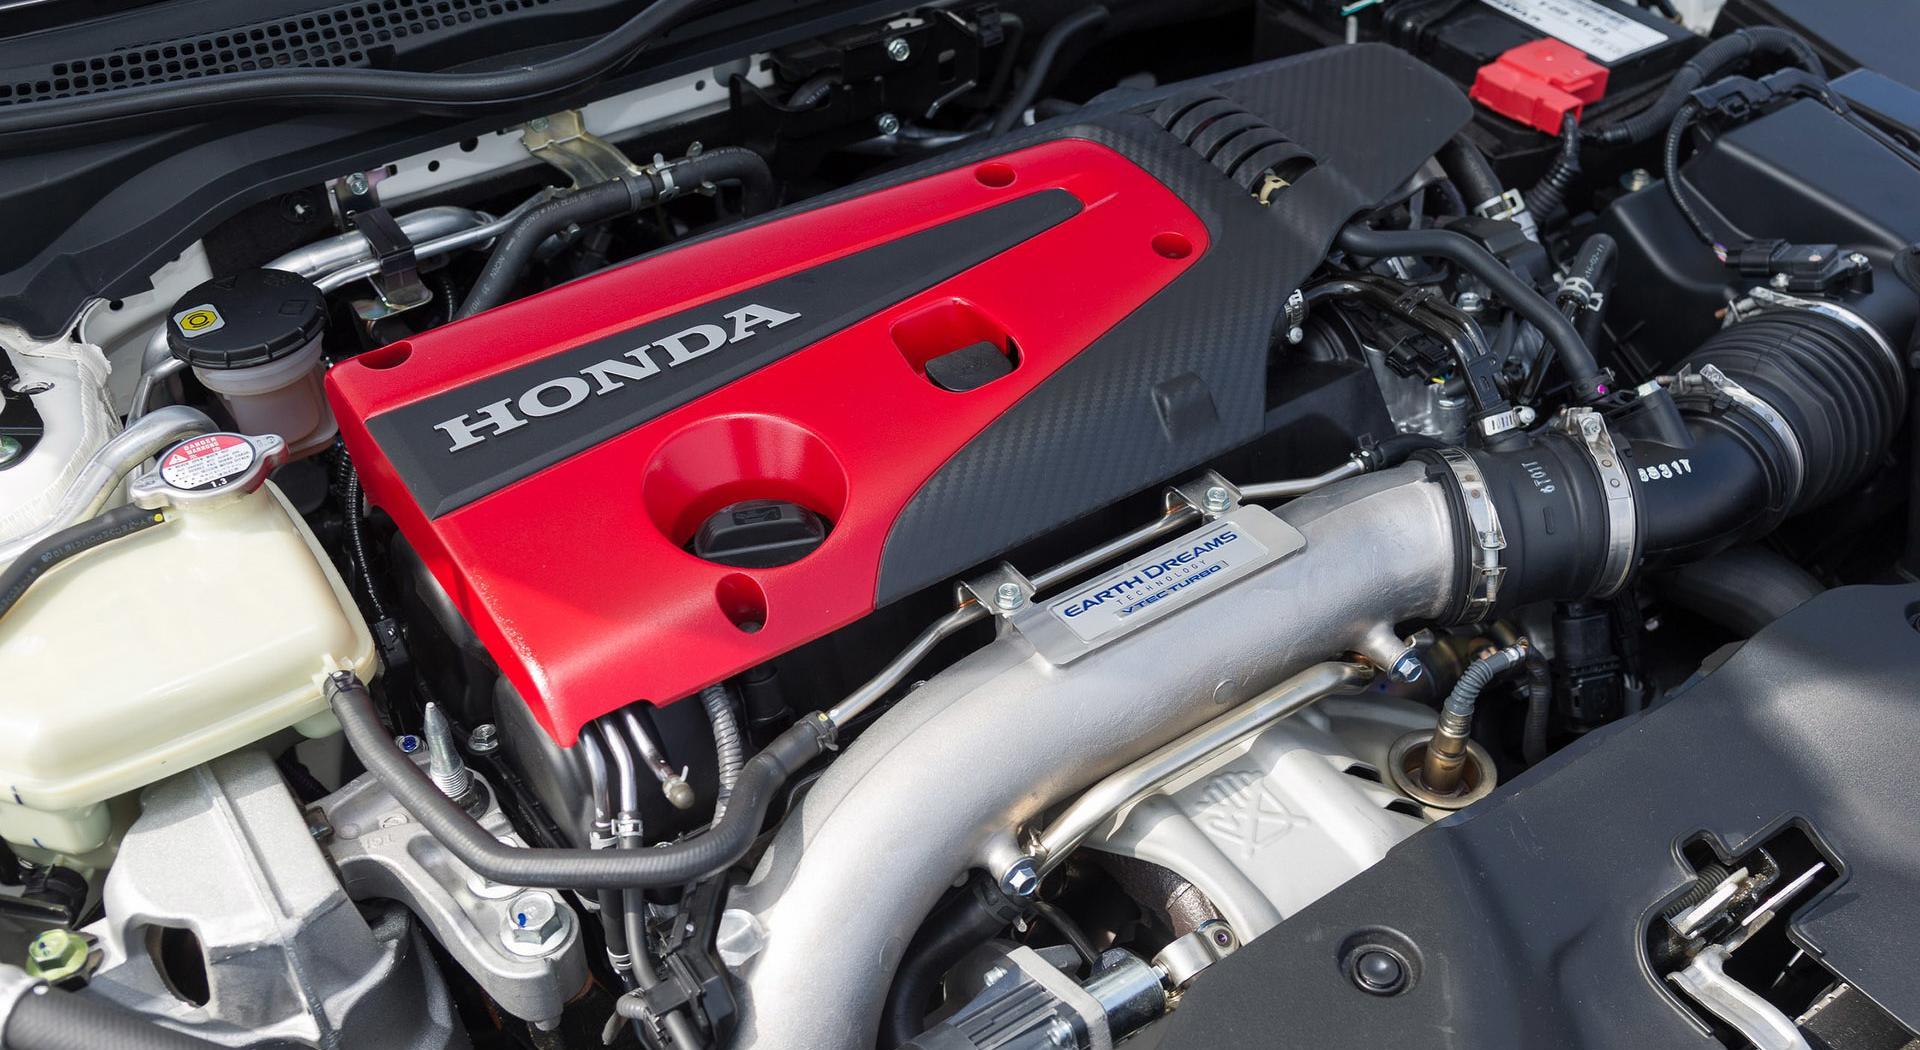 Honda Civic Type R 2017 detayl resim galerisi